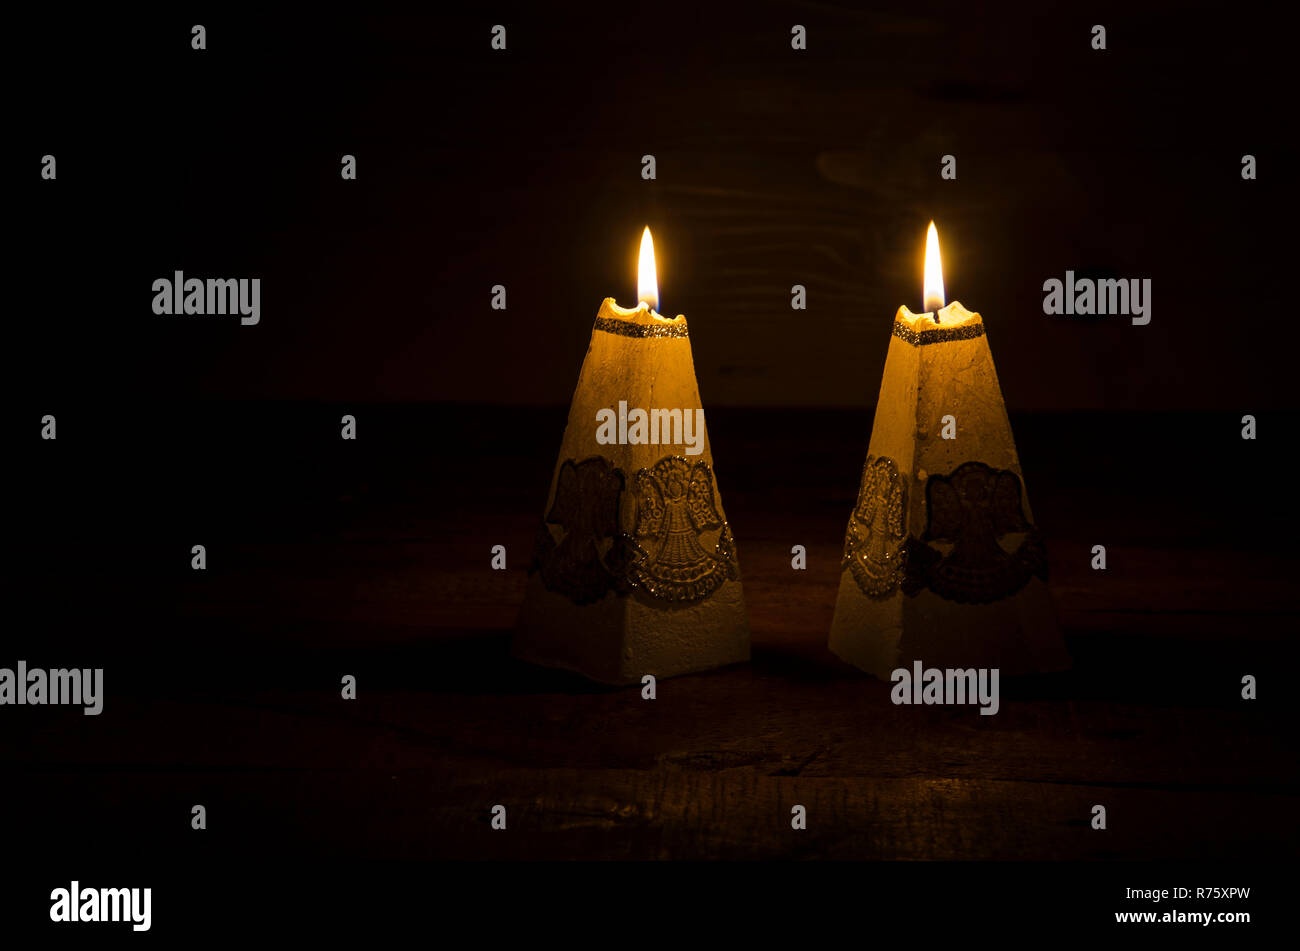 Bougies de Noël sont allumées dans le noir. Banque D'Images